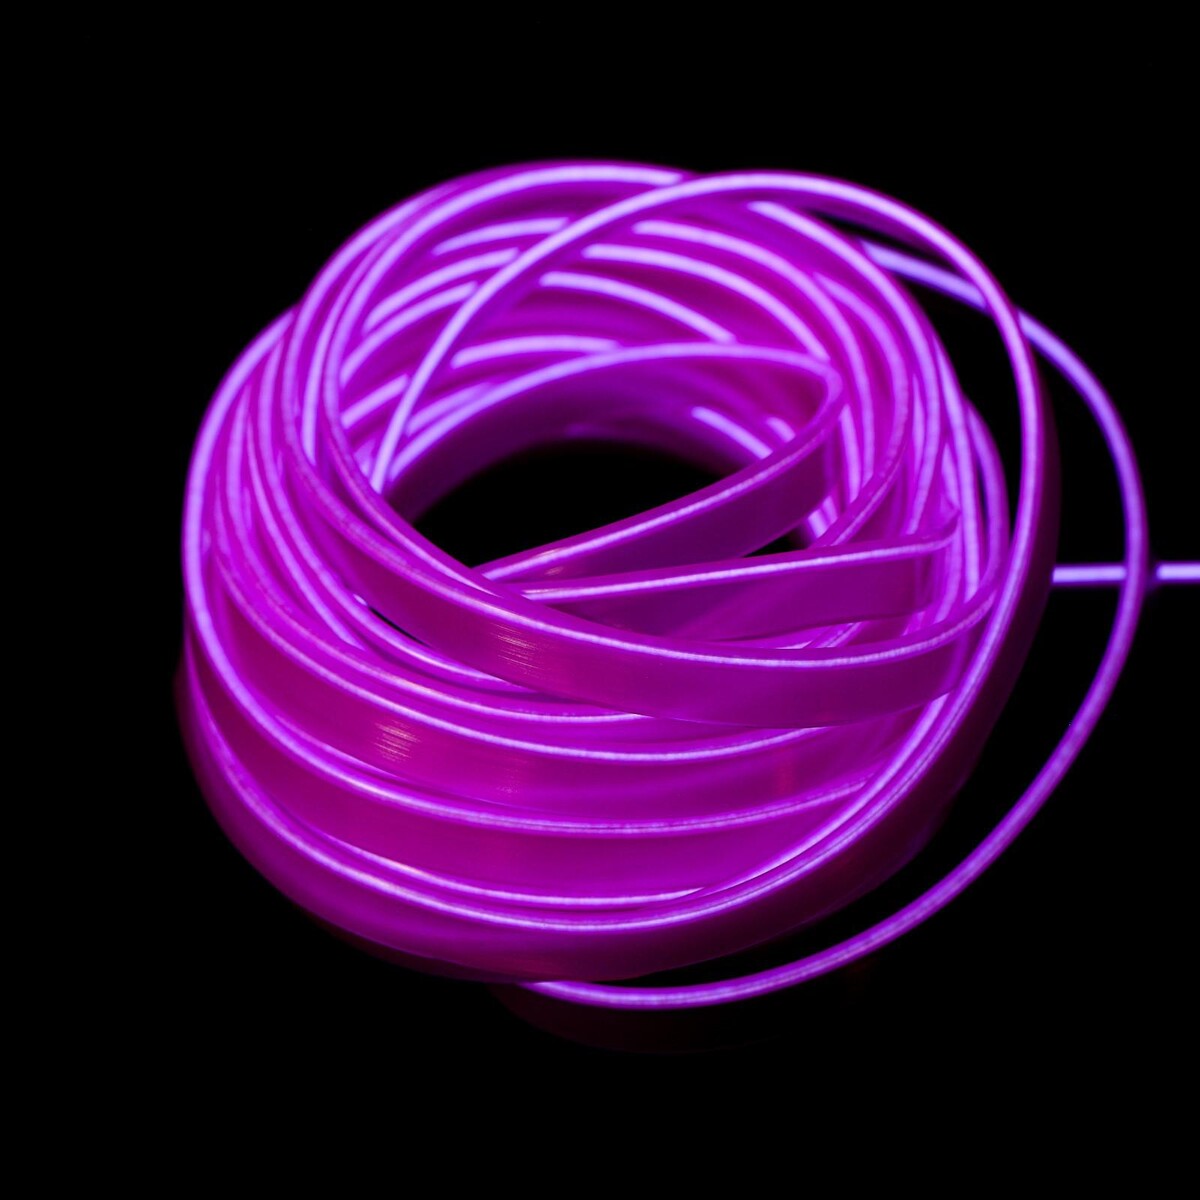 Неоновая нить cartage для подсветки салона, адаптер питания 12 в, 7 м, фиолетовый комплект верхней одежды nikastyle 7м2423 коралловый неон фиолетовый 98